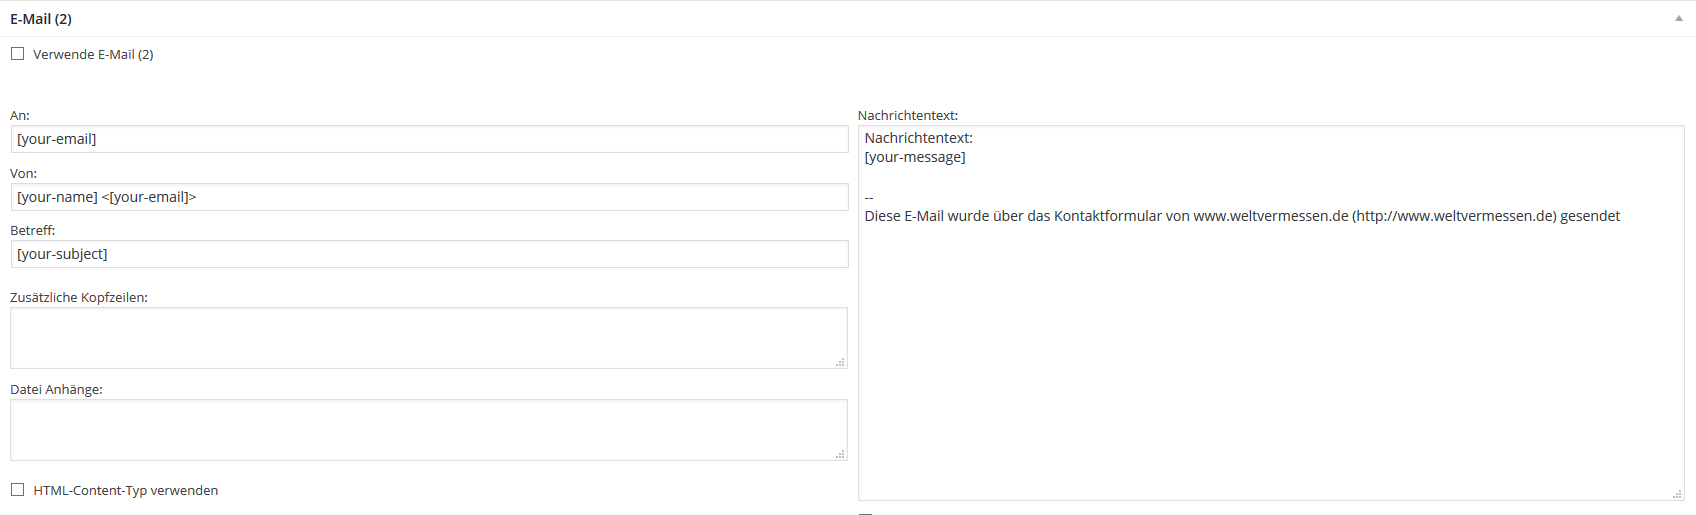 Email (2) - Contact Form 7 (c) SMART LEMON GmbH & Co. KG